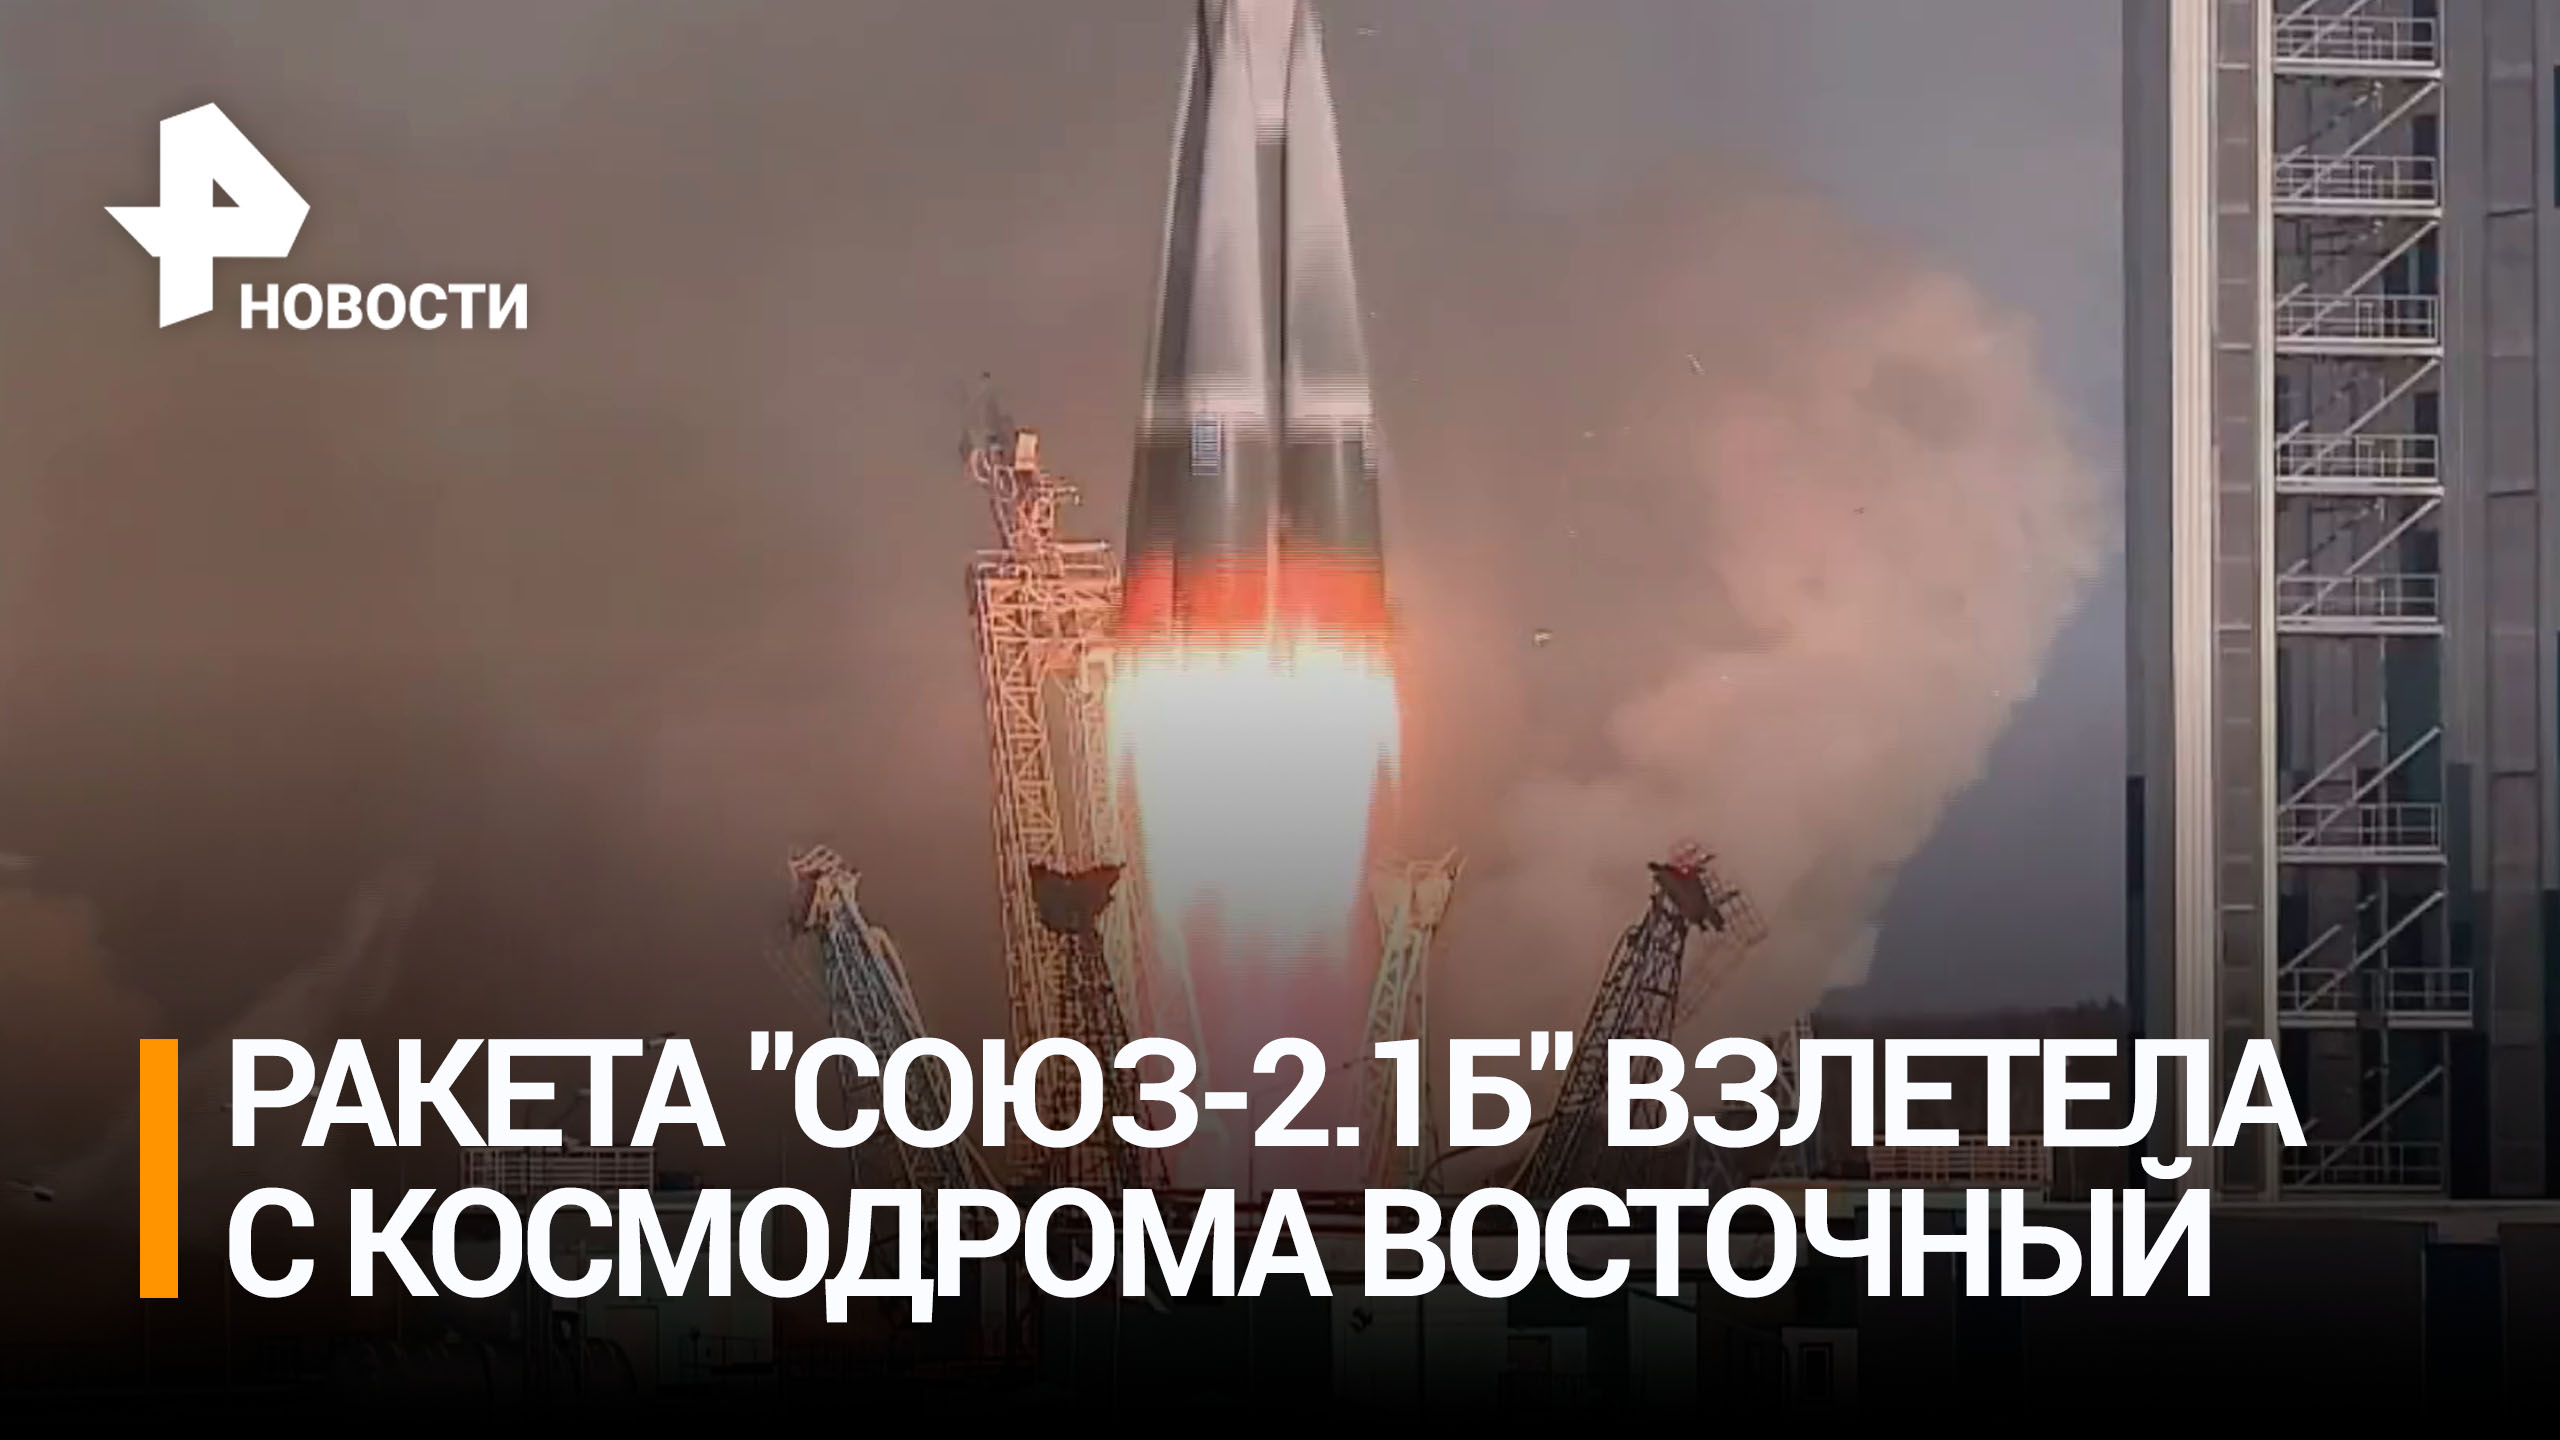 Ракета-носитель "Союз-2.1б" взлетела с космодрома Восточный / РЕН